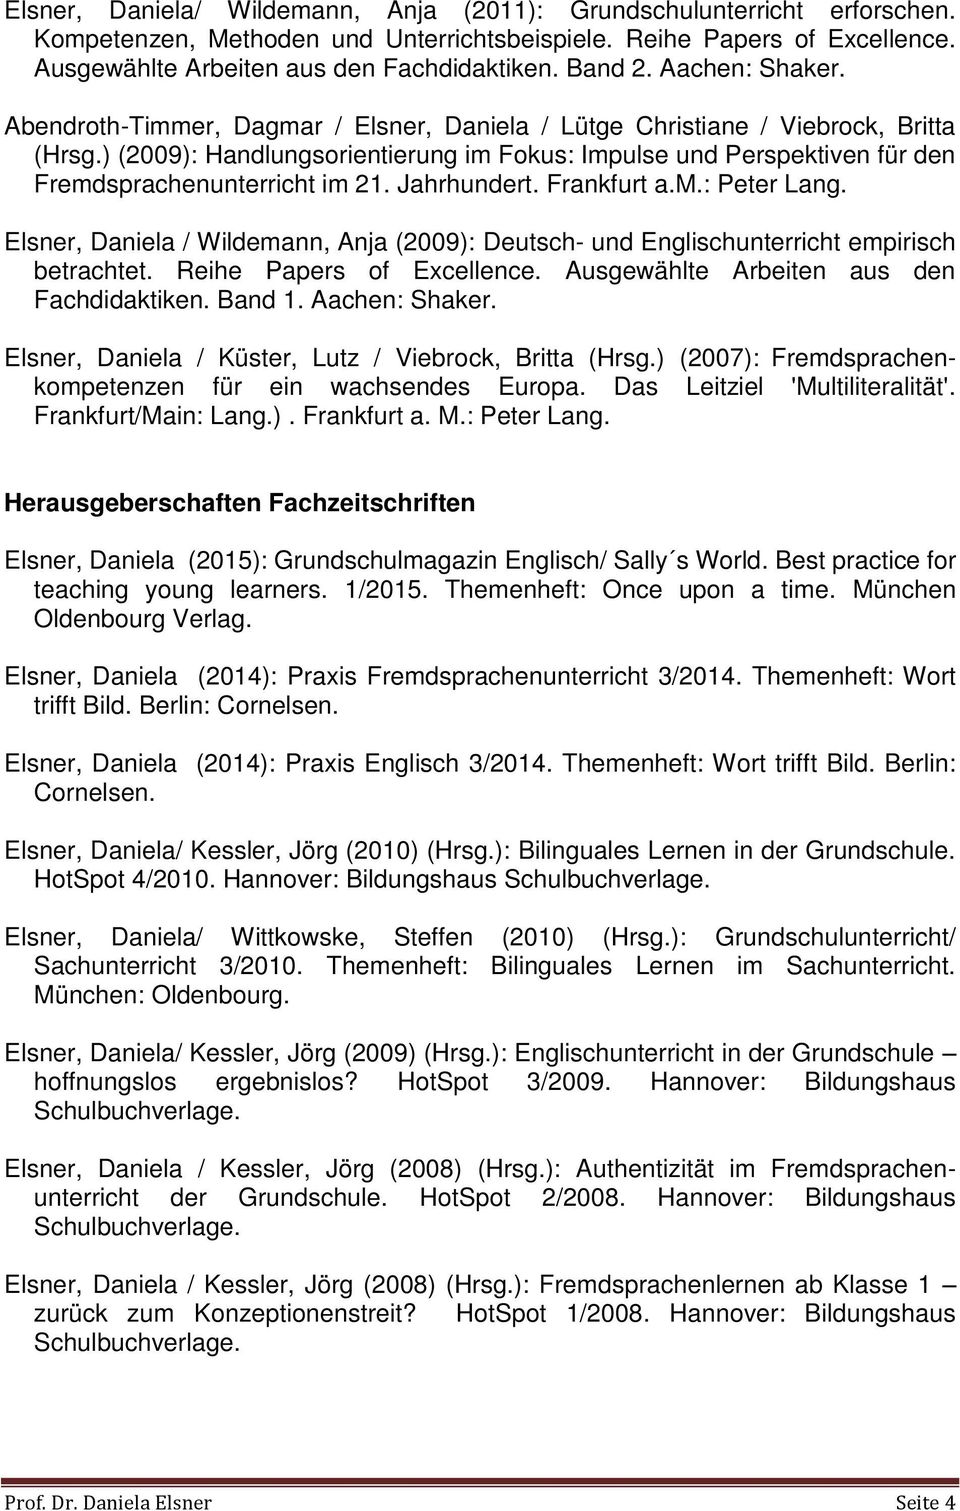 ) (2009): Handlungsorientierung im Fokus: Impulse und Perspektiven für den Fremdsprachenunterricht im 21. Jahrhundert. Frankfurt a.m.: Peter Lang.